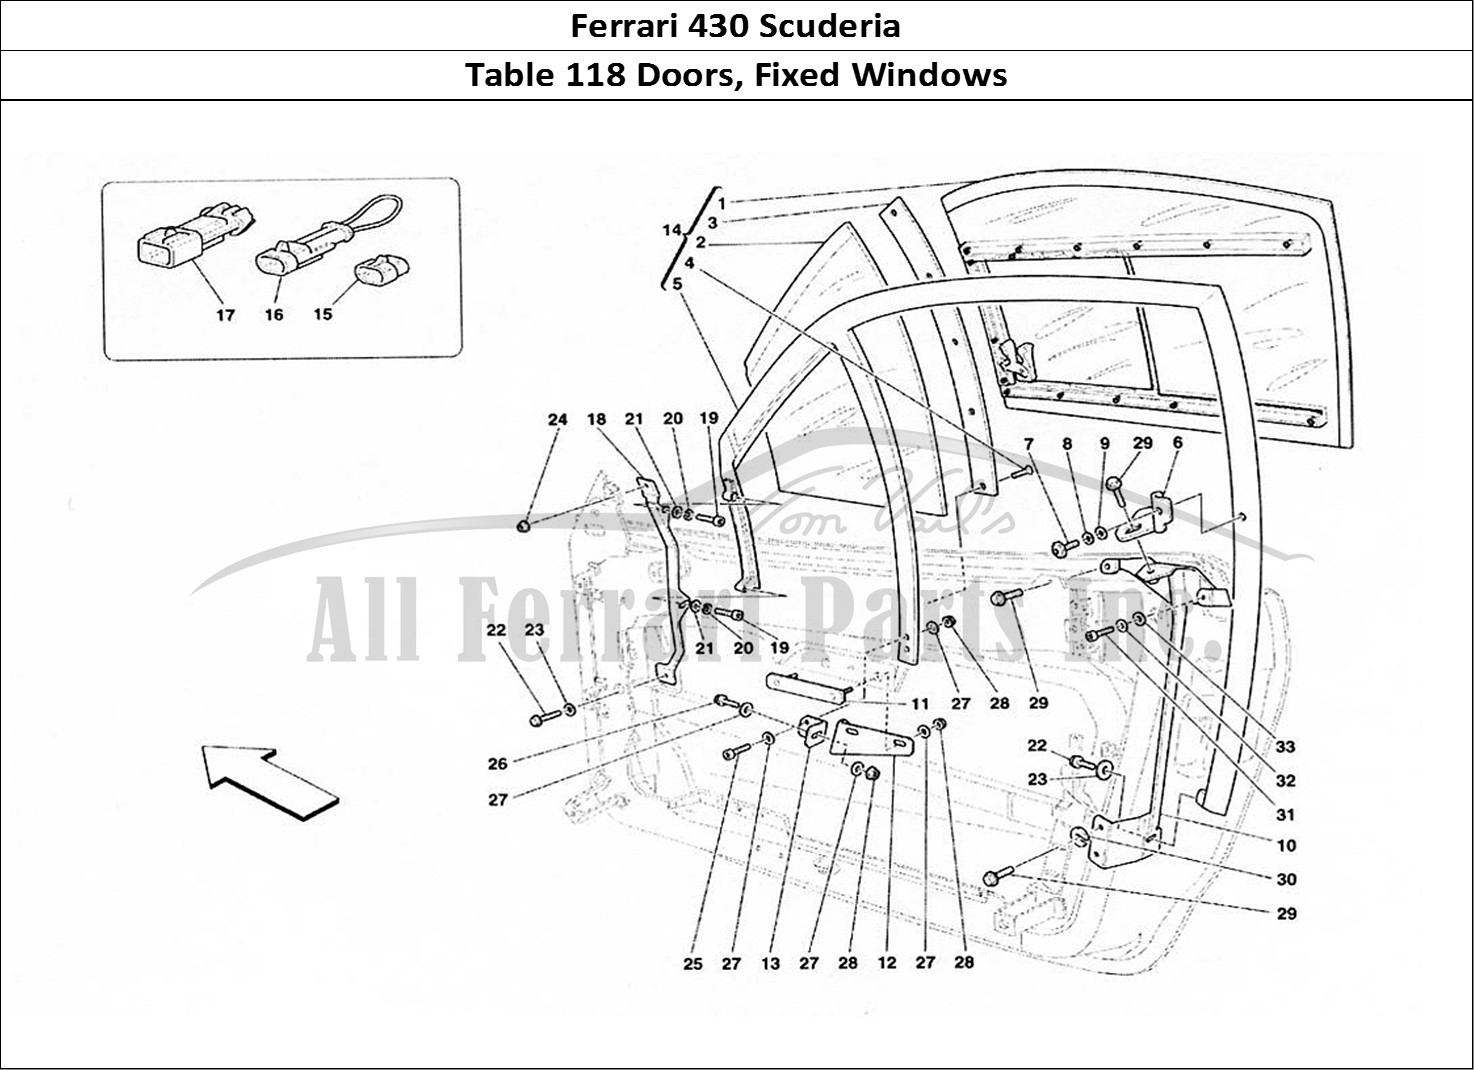 Ferrari Parts Ferrari 430 Scuderia Page 118 Doors - Fixed Window